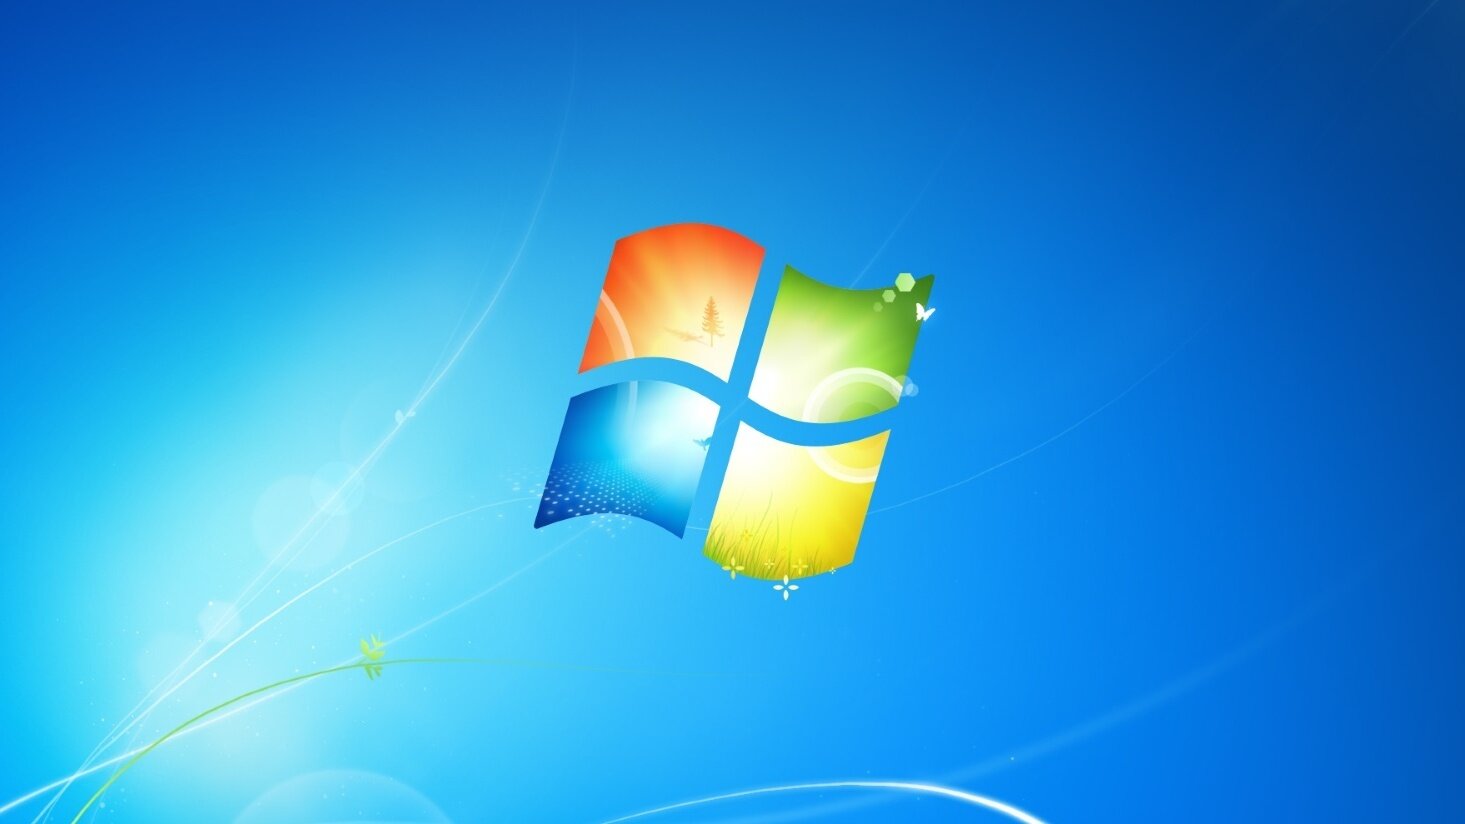 Windows 7 stále využívá pětina počítačů